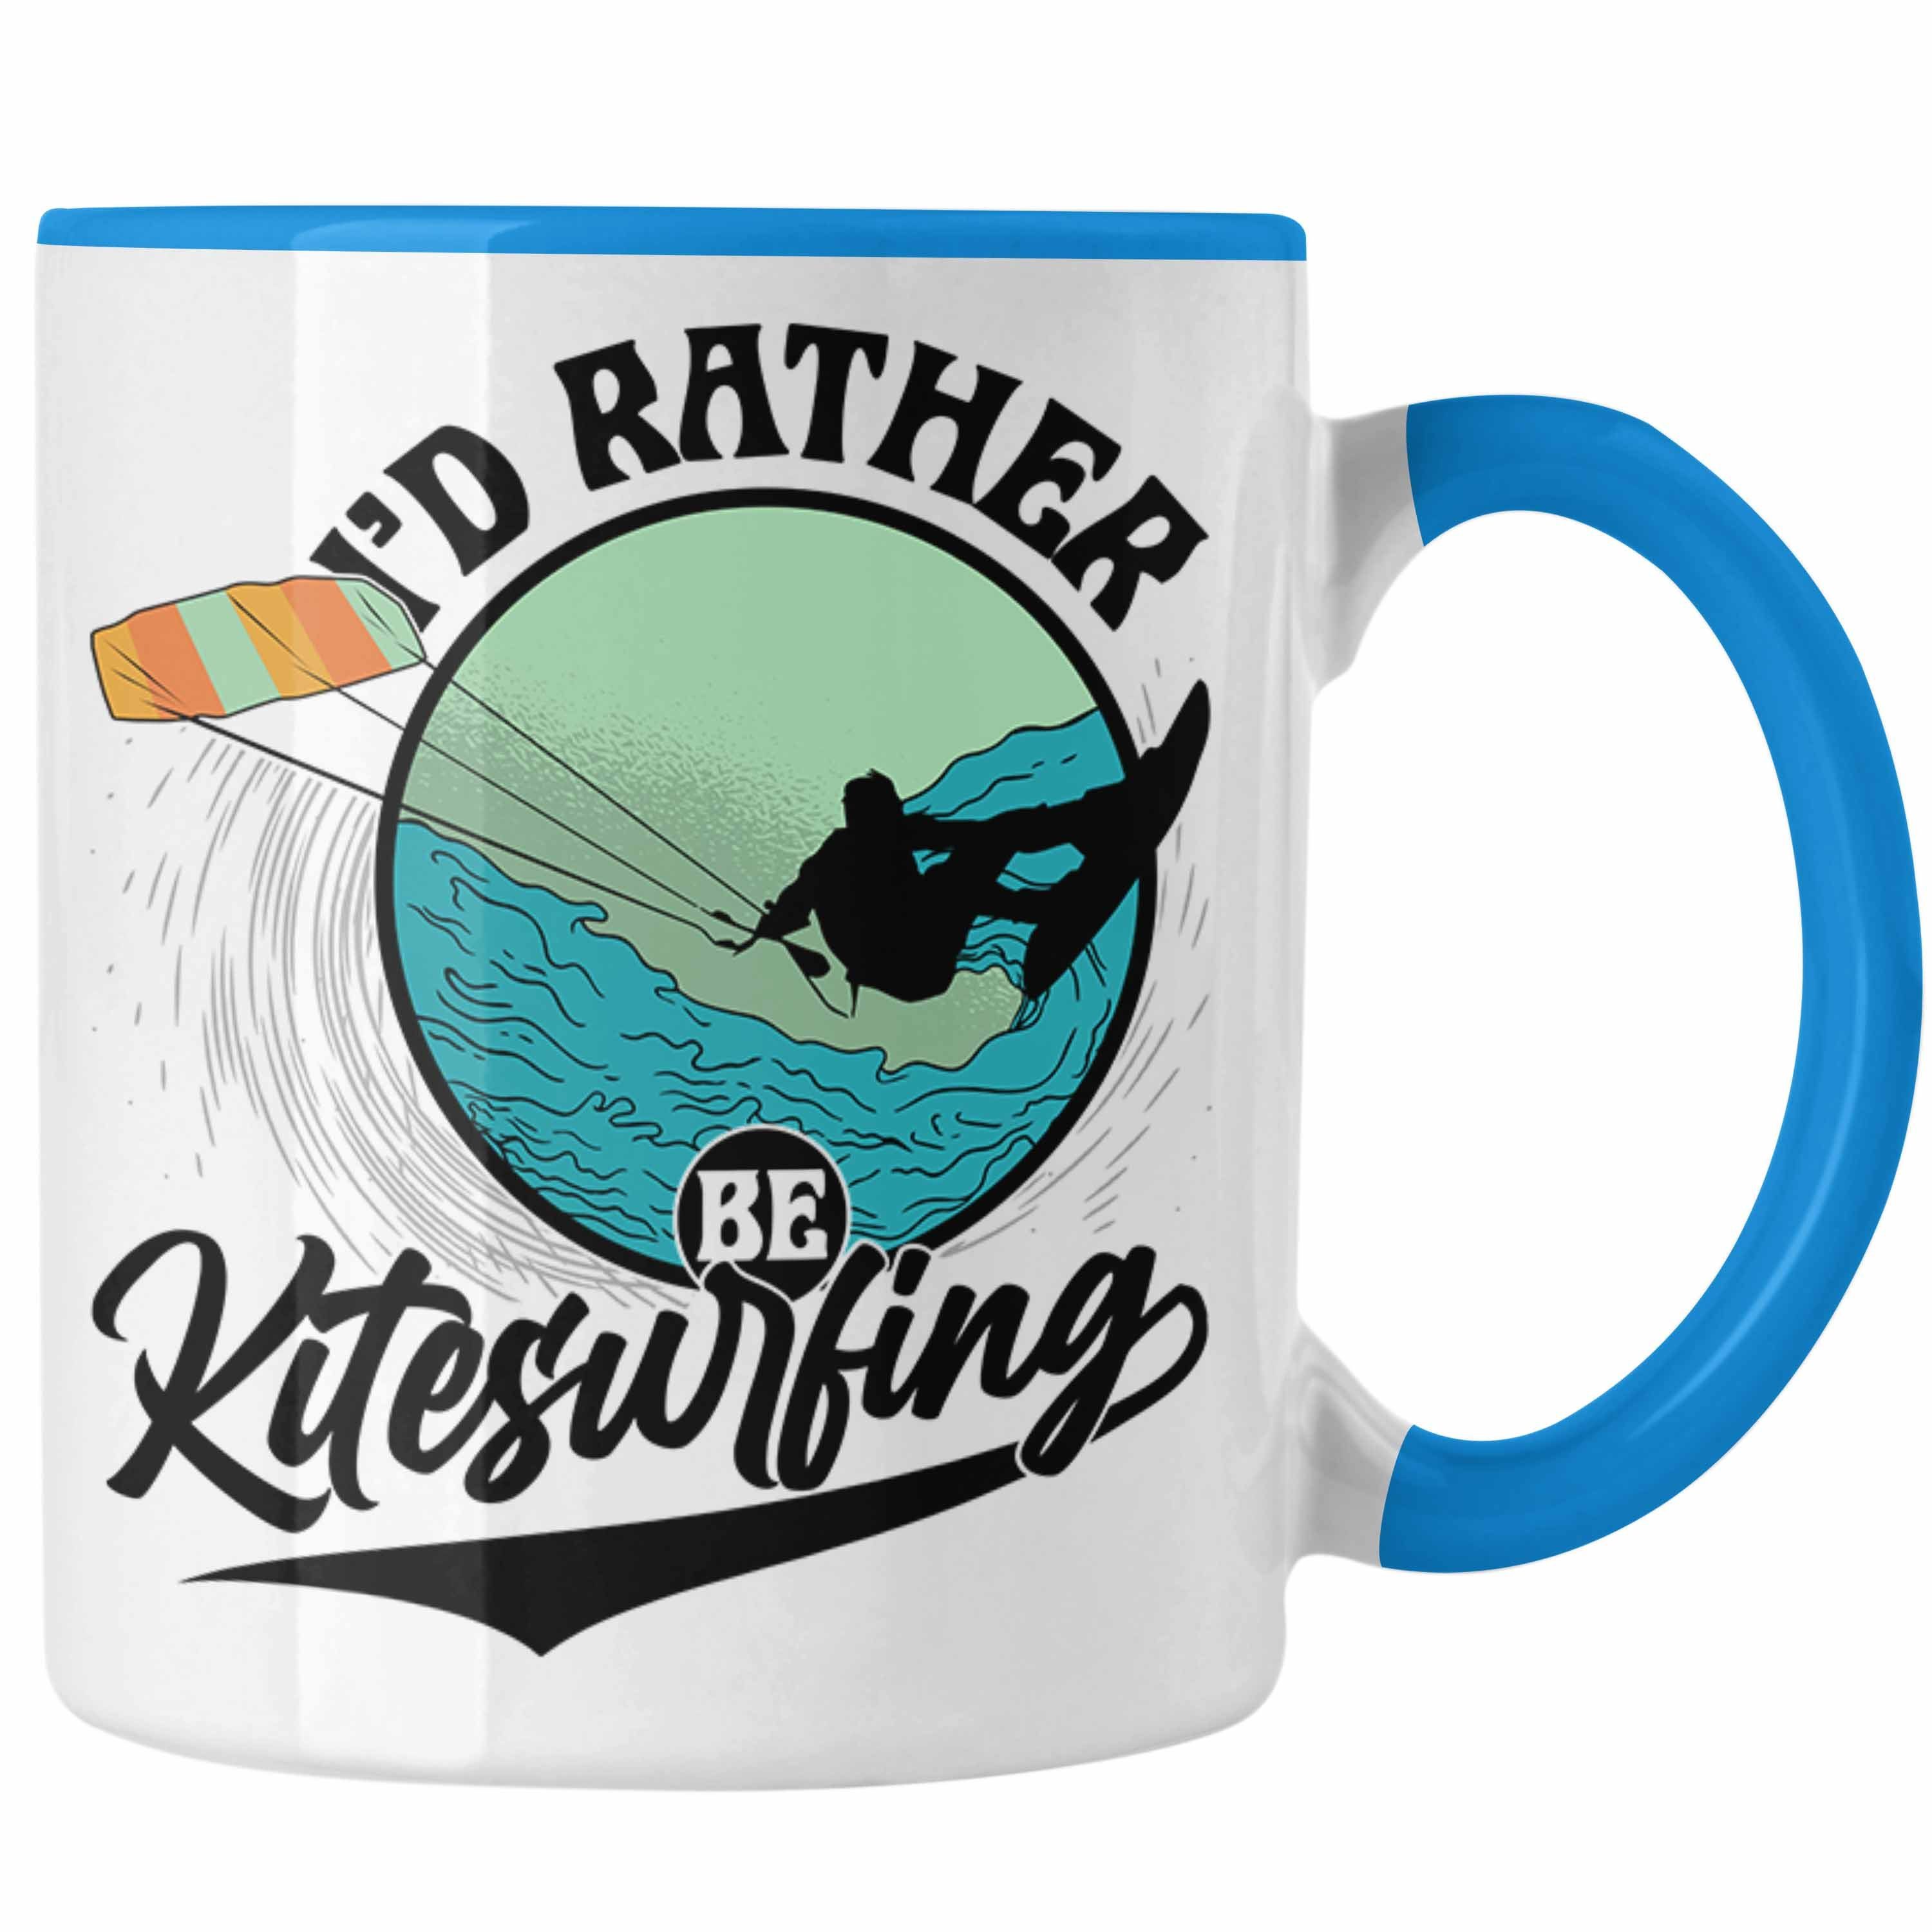 Kitesurfer Kitesurfing Geschenkidee I'd Geschenk Tasse K Blau Be Rather Tasse Trendation für